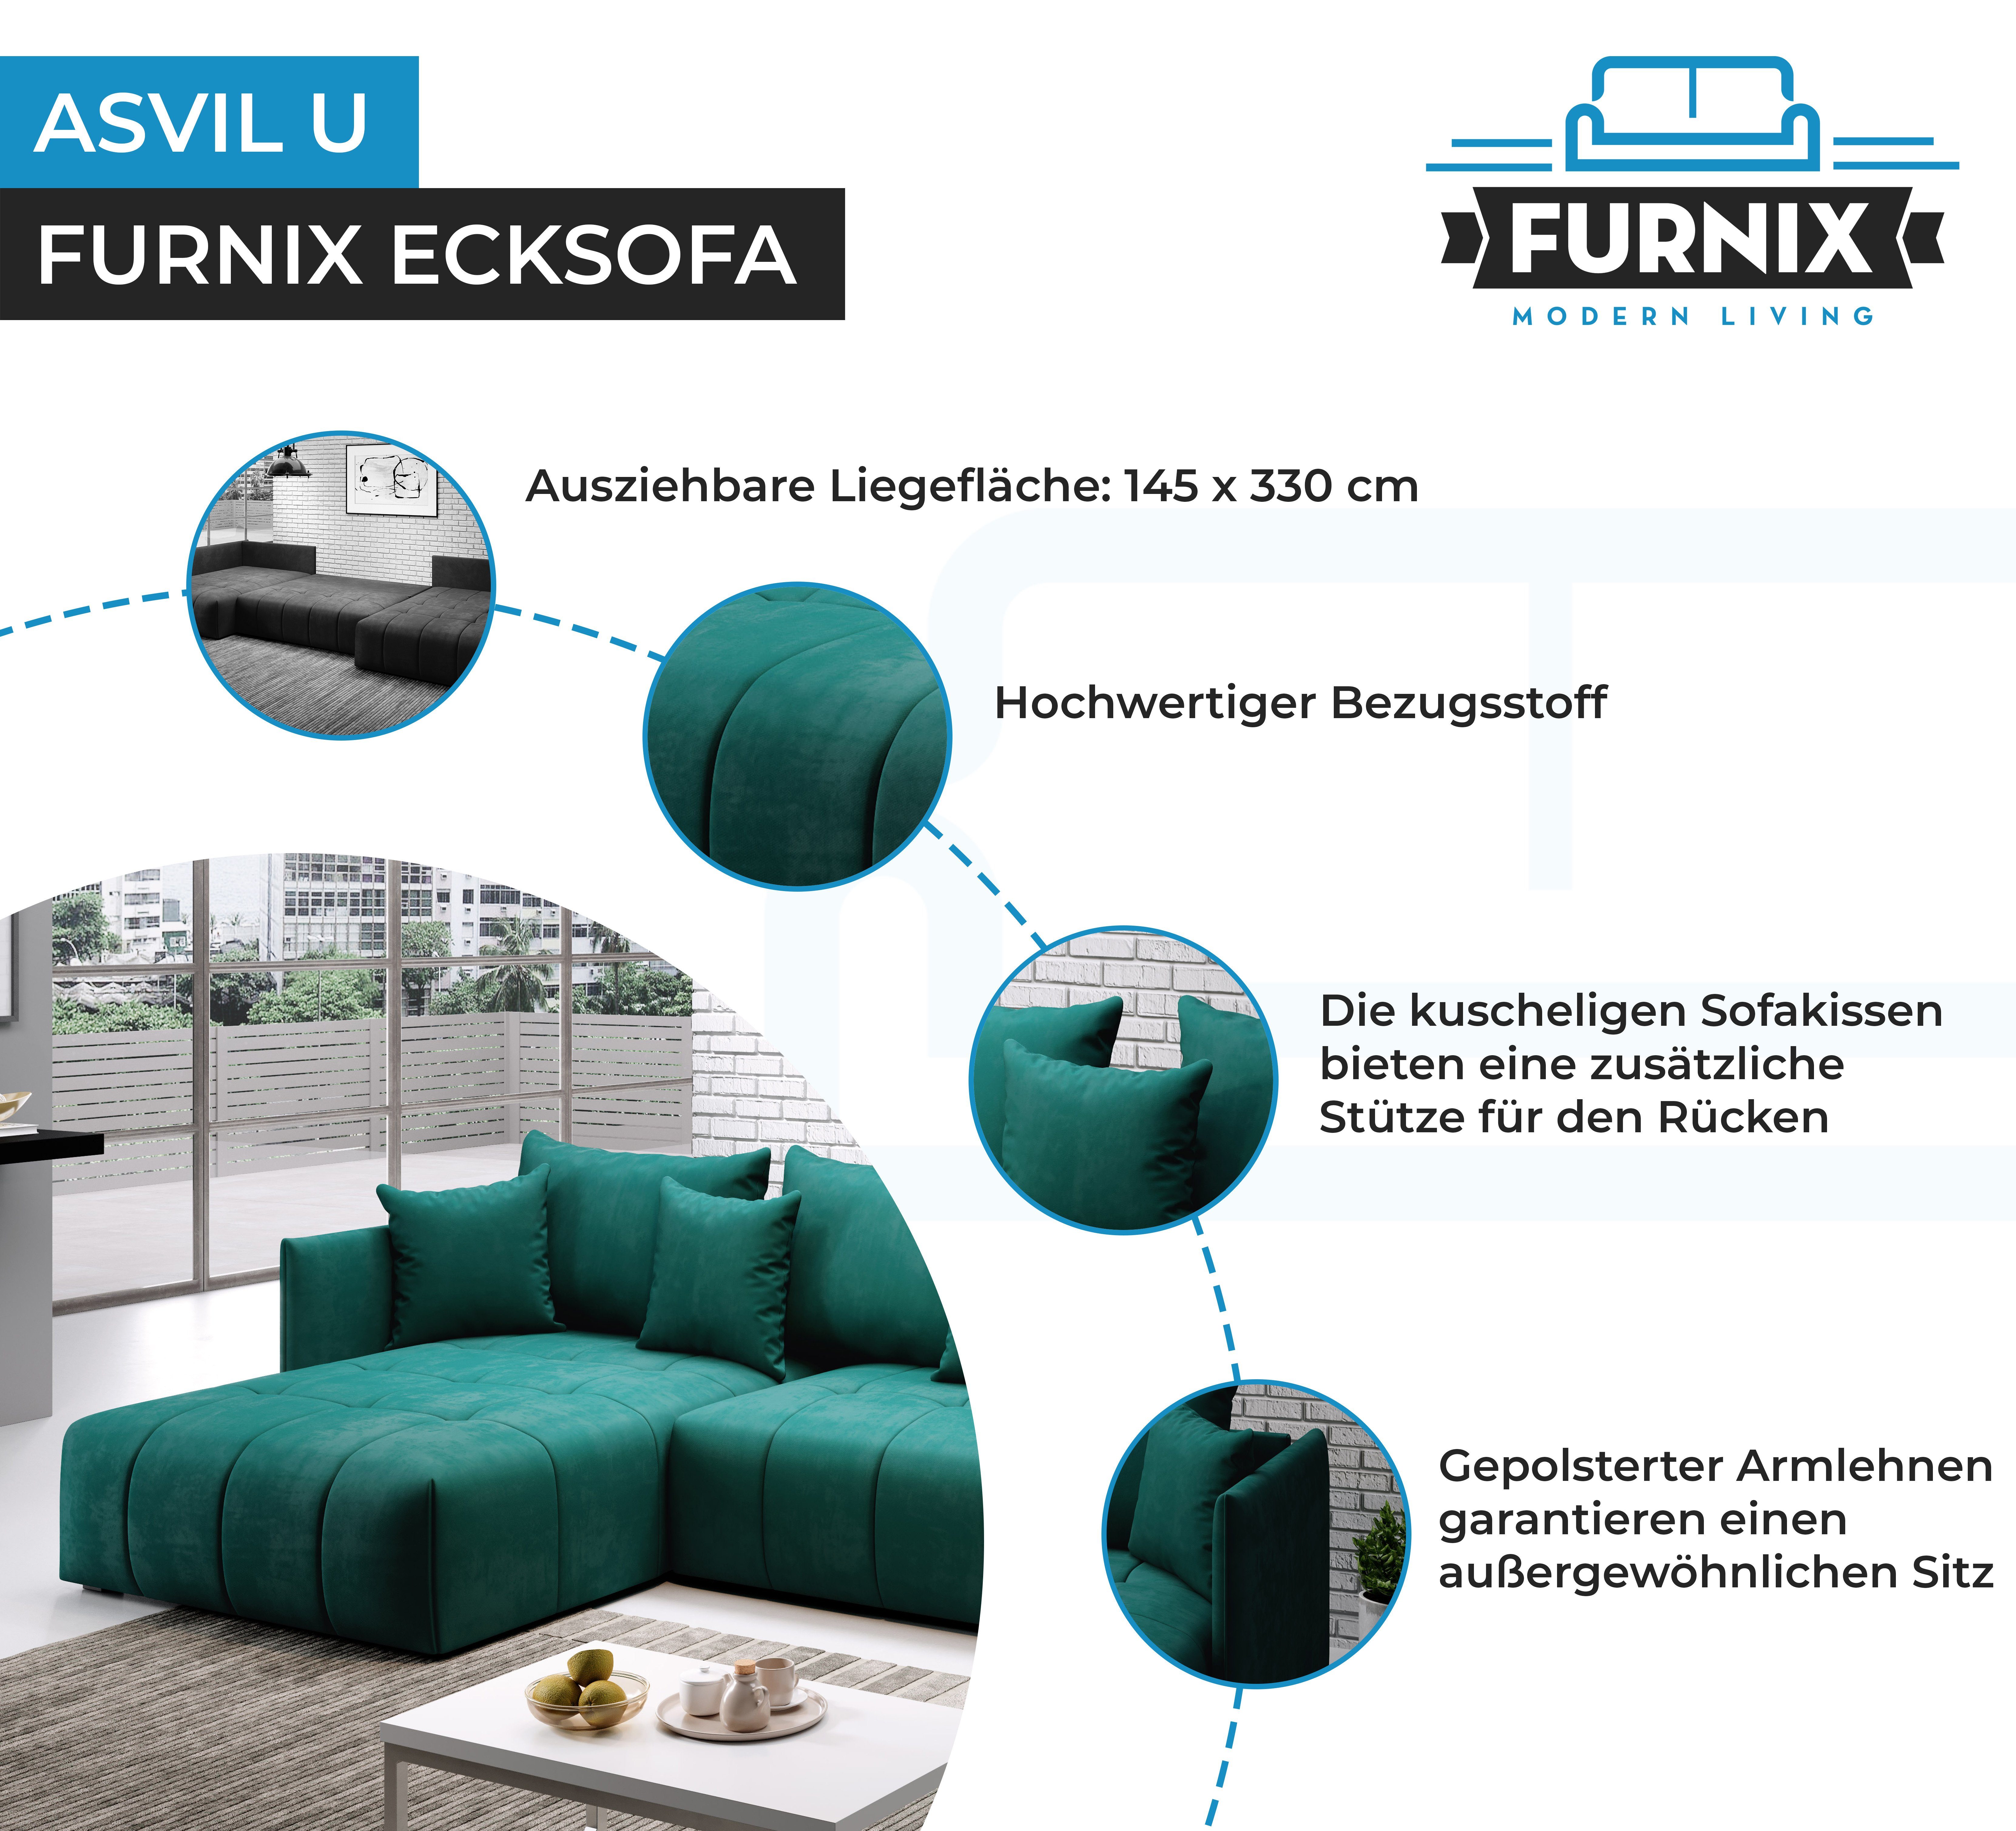 x H80 und Made in mit U-Form-Sofa Schlaffunktion Europe B353 Bettkasten, ASVIL Farbauswahl, Ecksofa x Grün MH37 Furnix cm, T180